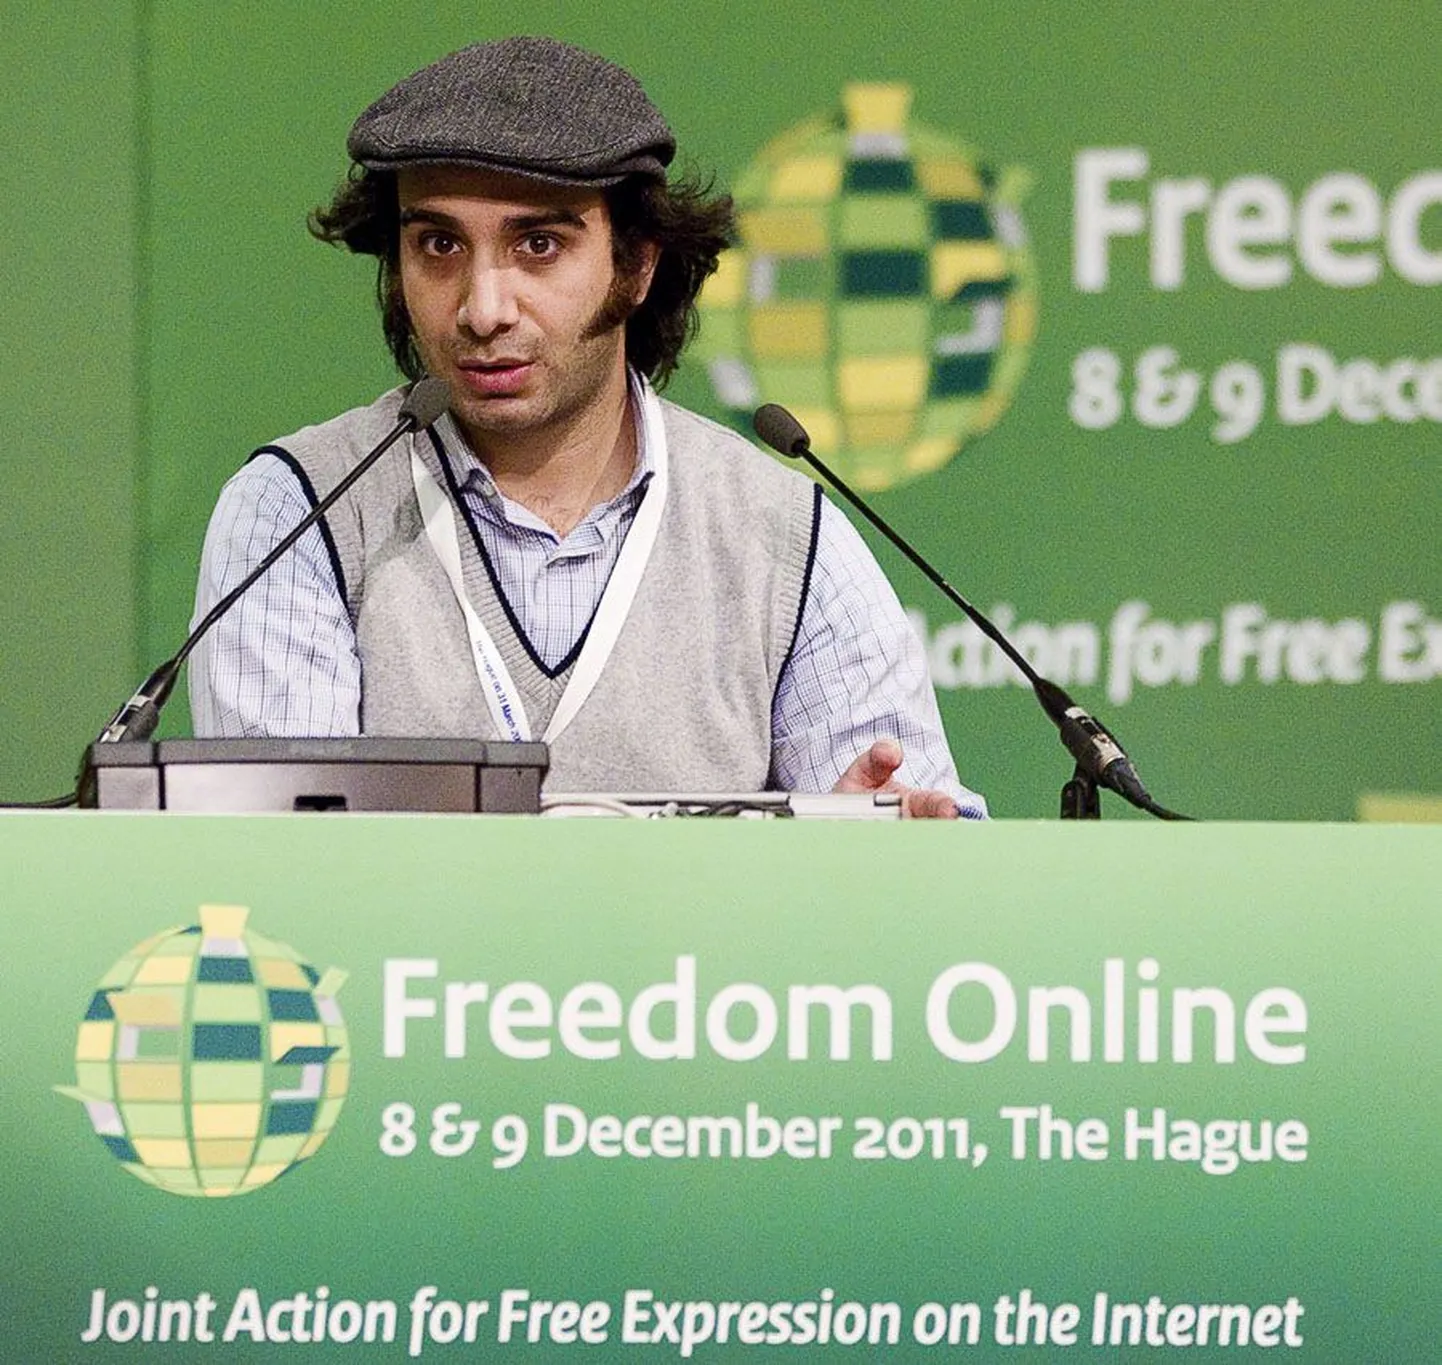 Süüria blogija Amjad Baiazy, keda võimud on ka arreteerinud, rõhutas konverentsil netivabaduse olulisust.